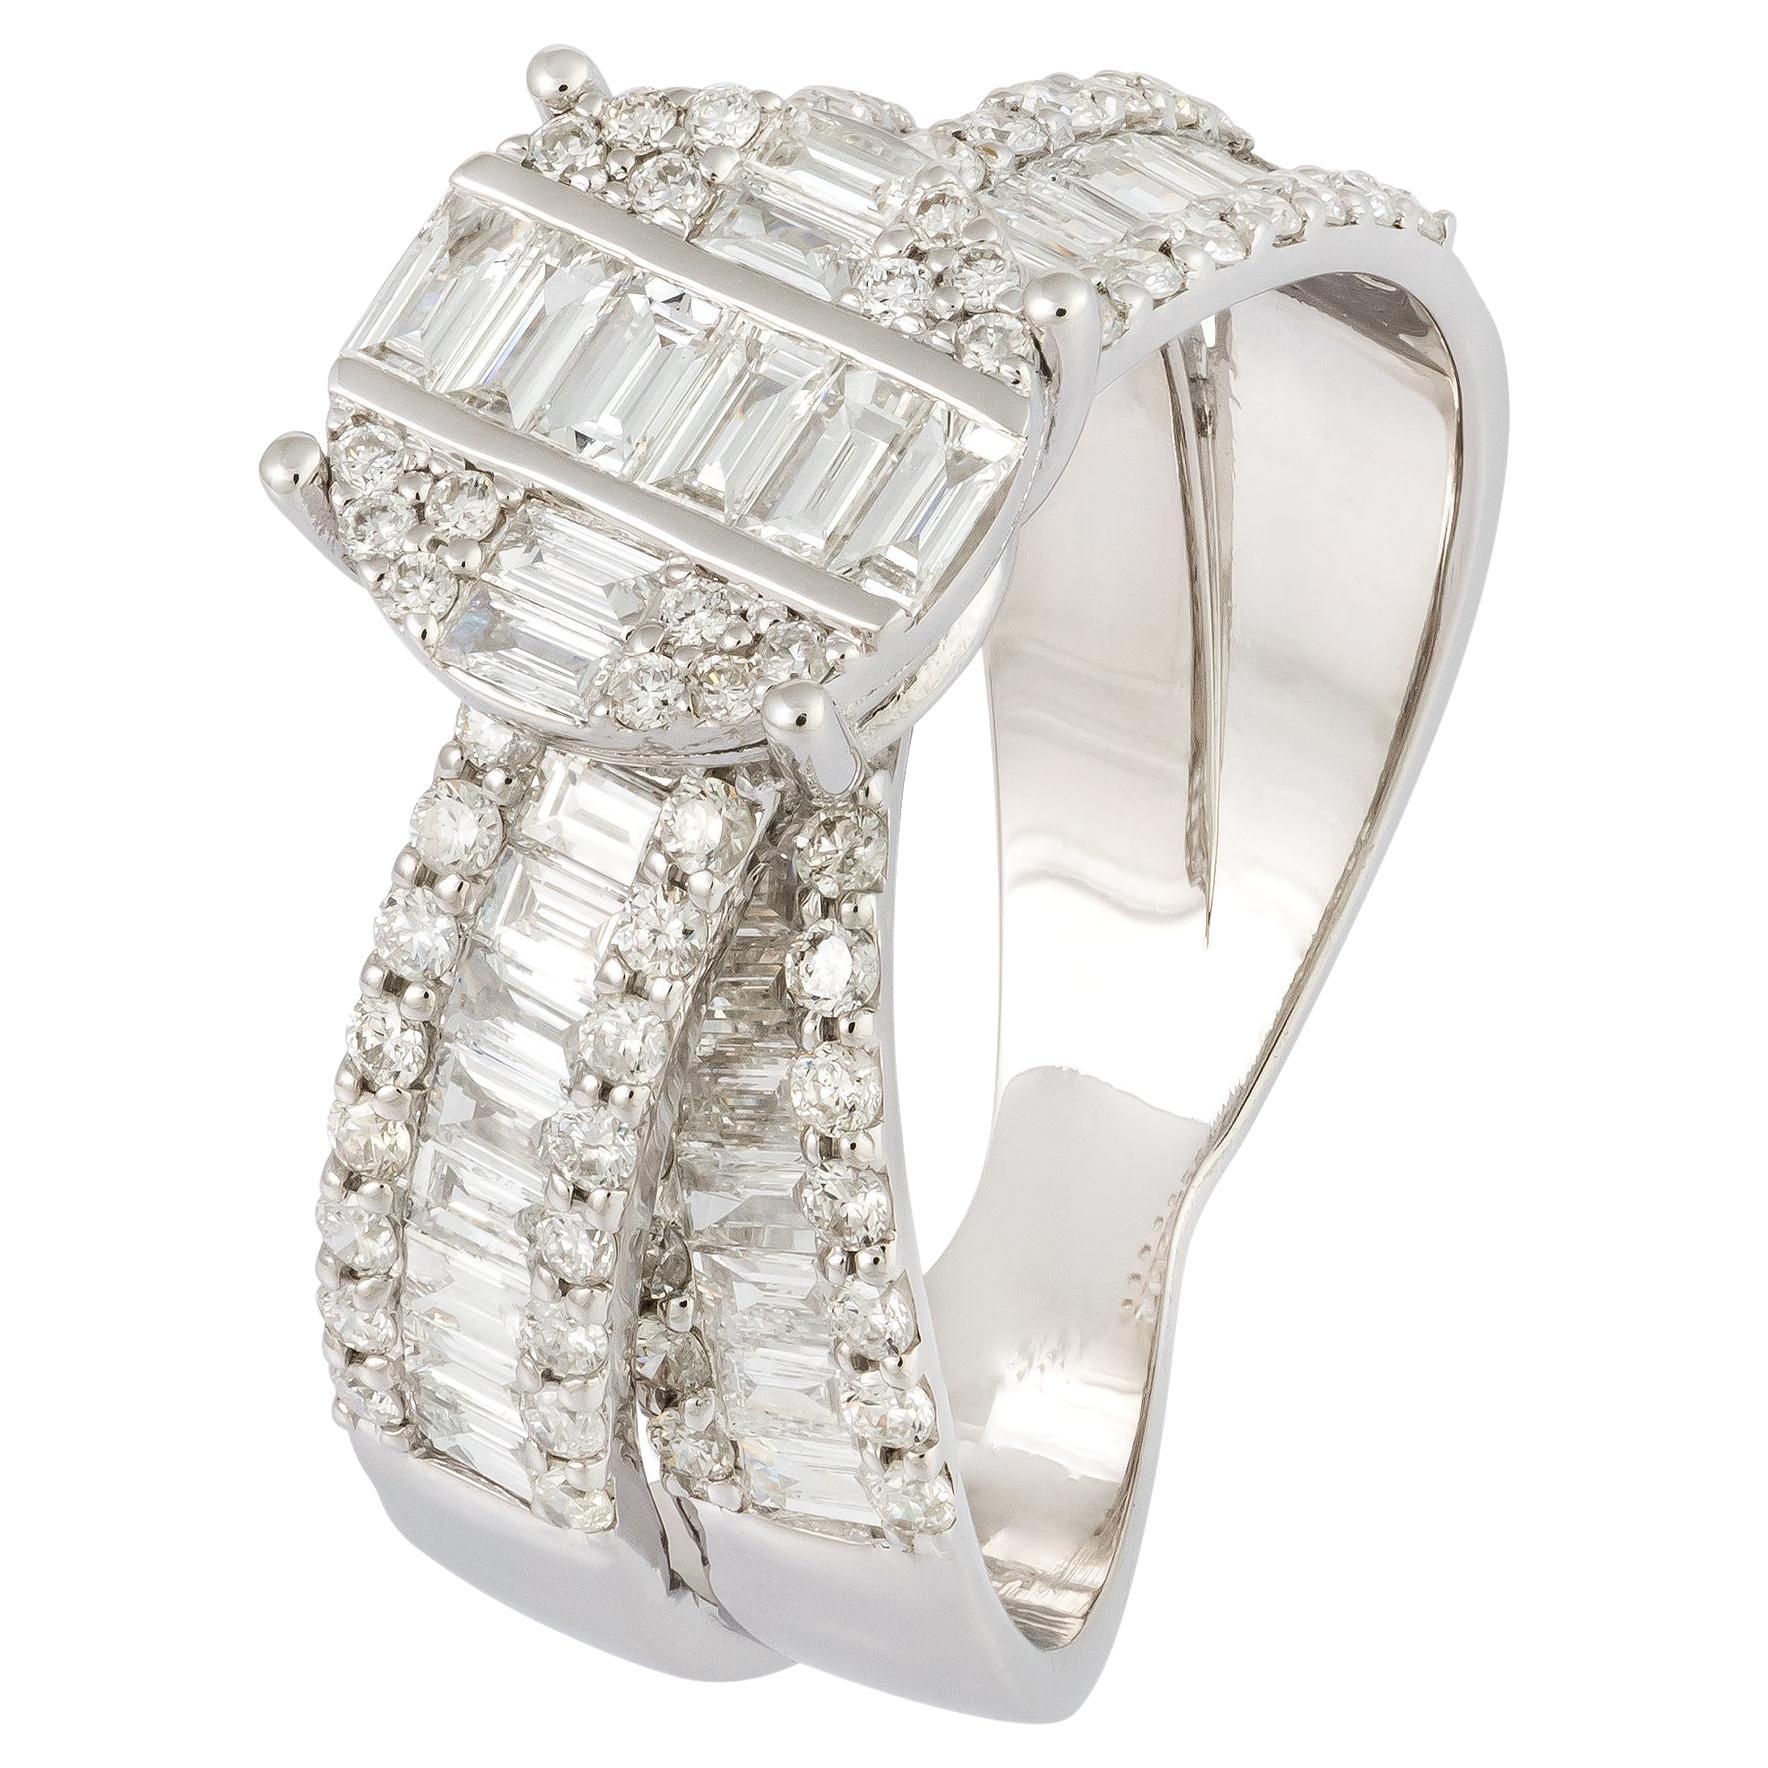 For Sale:  Impressive White 18K Gold White Diamond Ring for Her